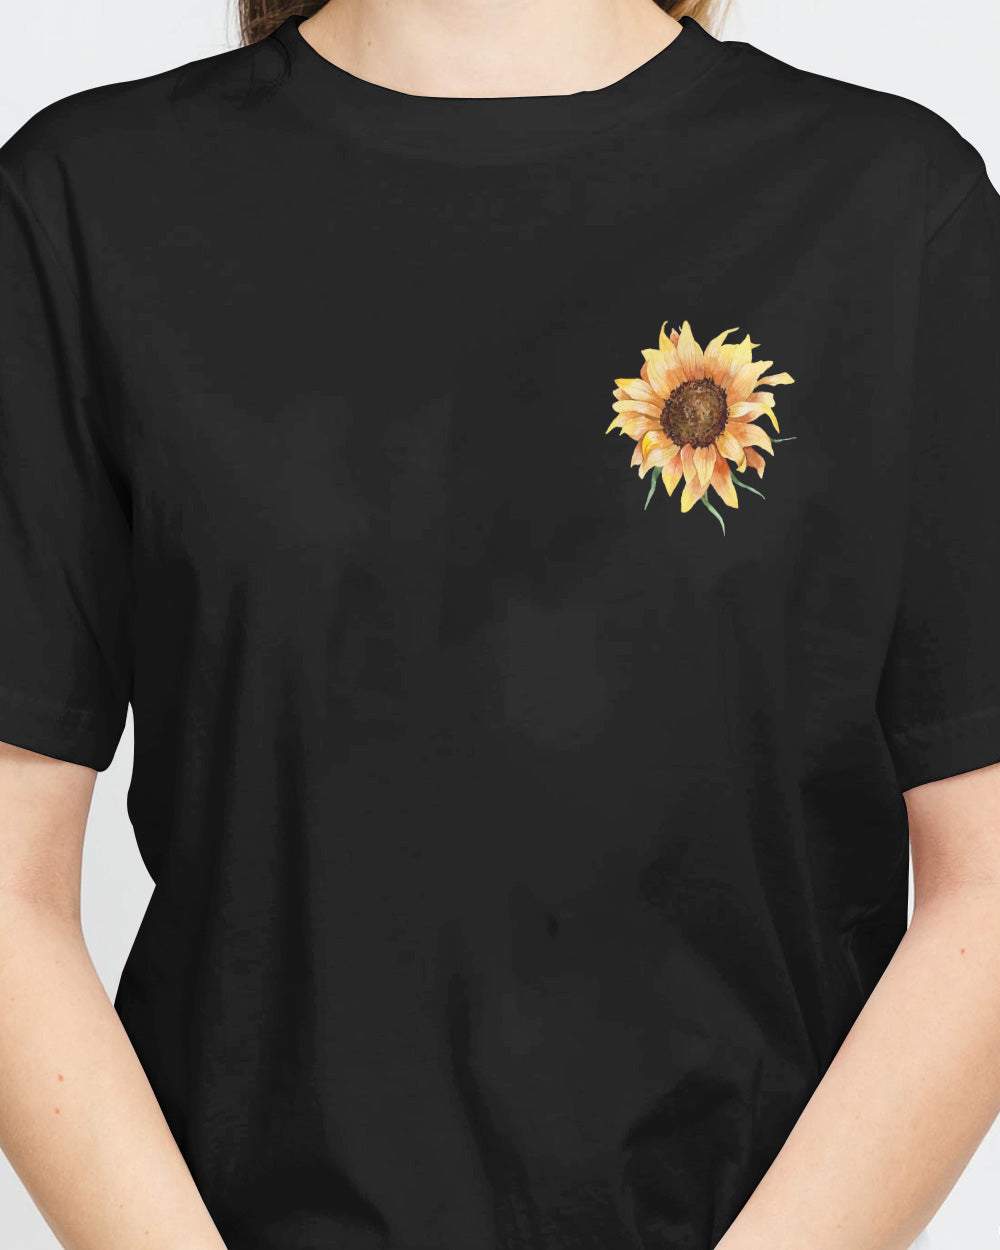 Fé Sunflower Cross American Flag Women's Christian Tshirt